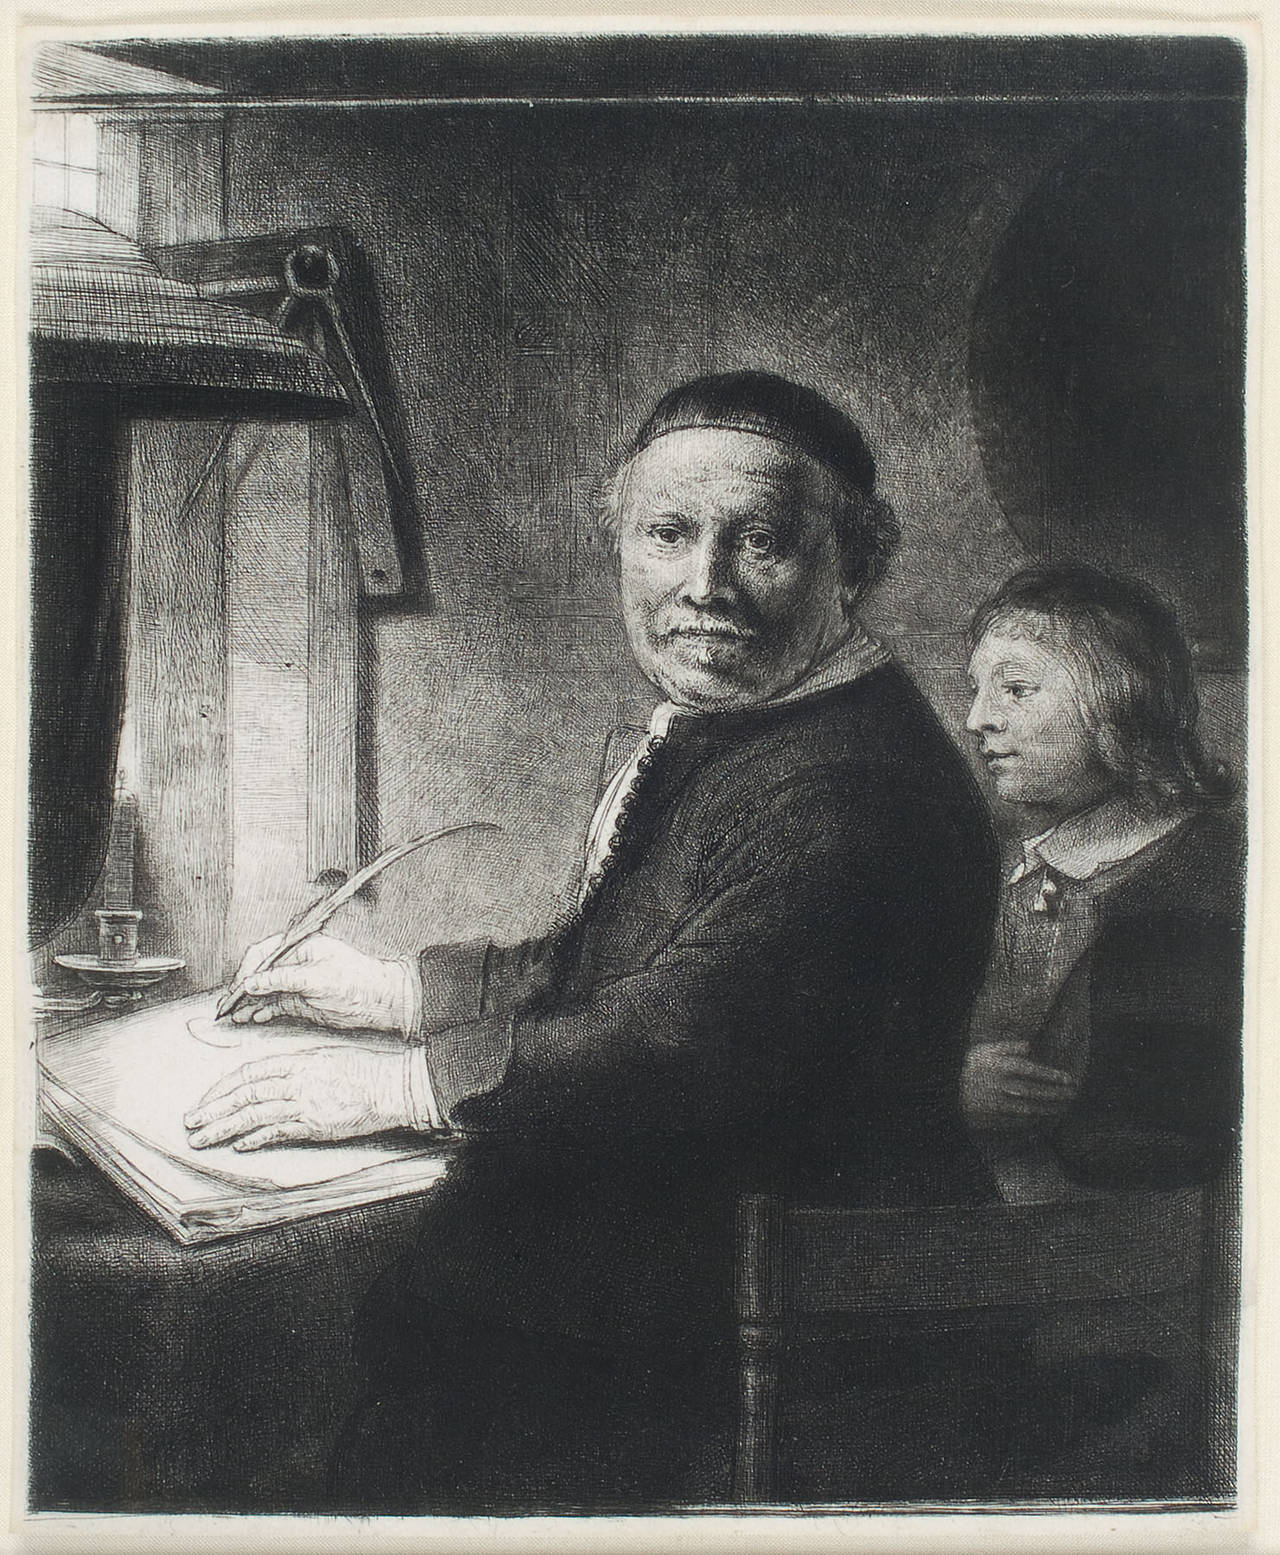 Rembrandt van Rijn Portrait Print - LIEVEN WILLEMSZ VAN COPPENOL, WRITING-MASTER: THE SMALLER PLATE